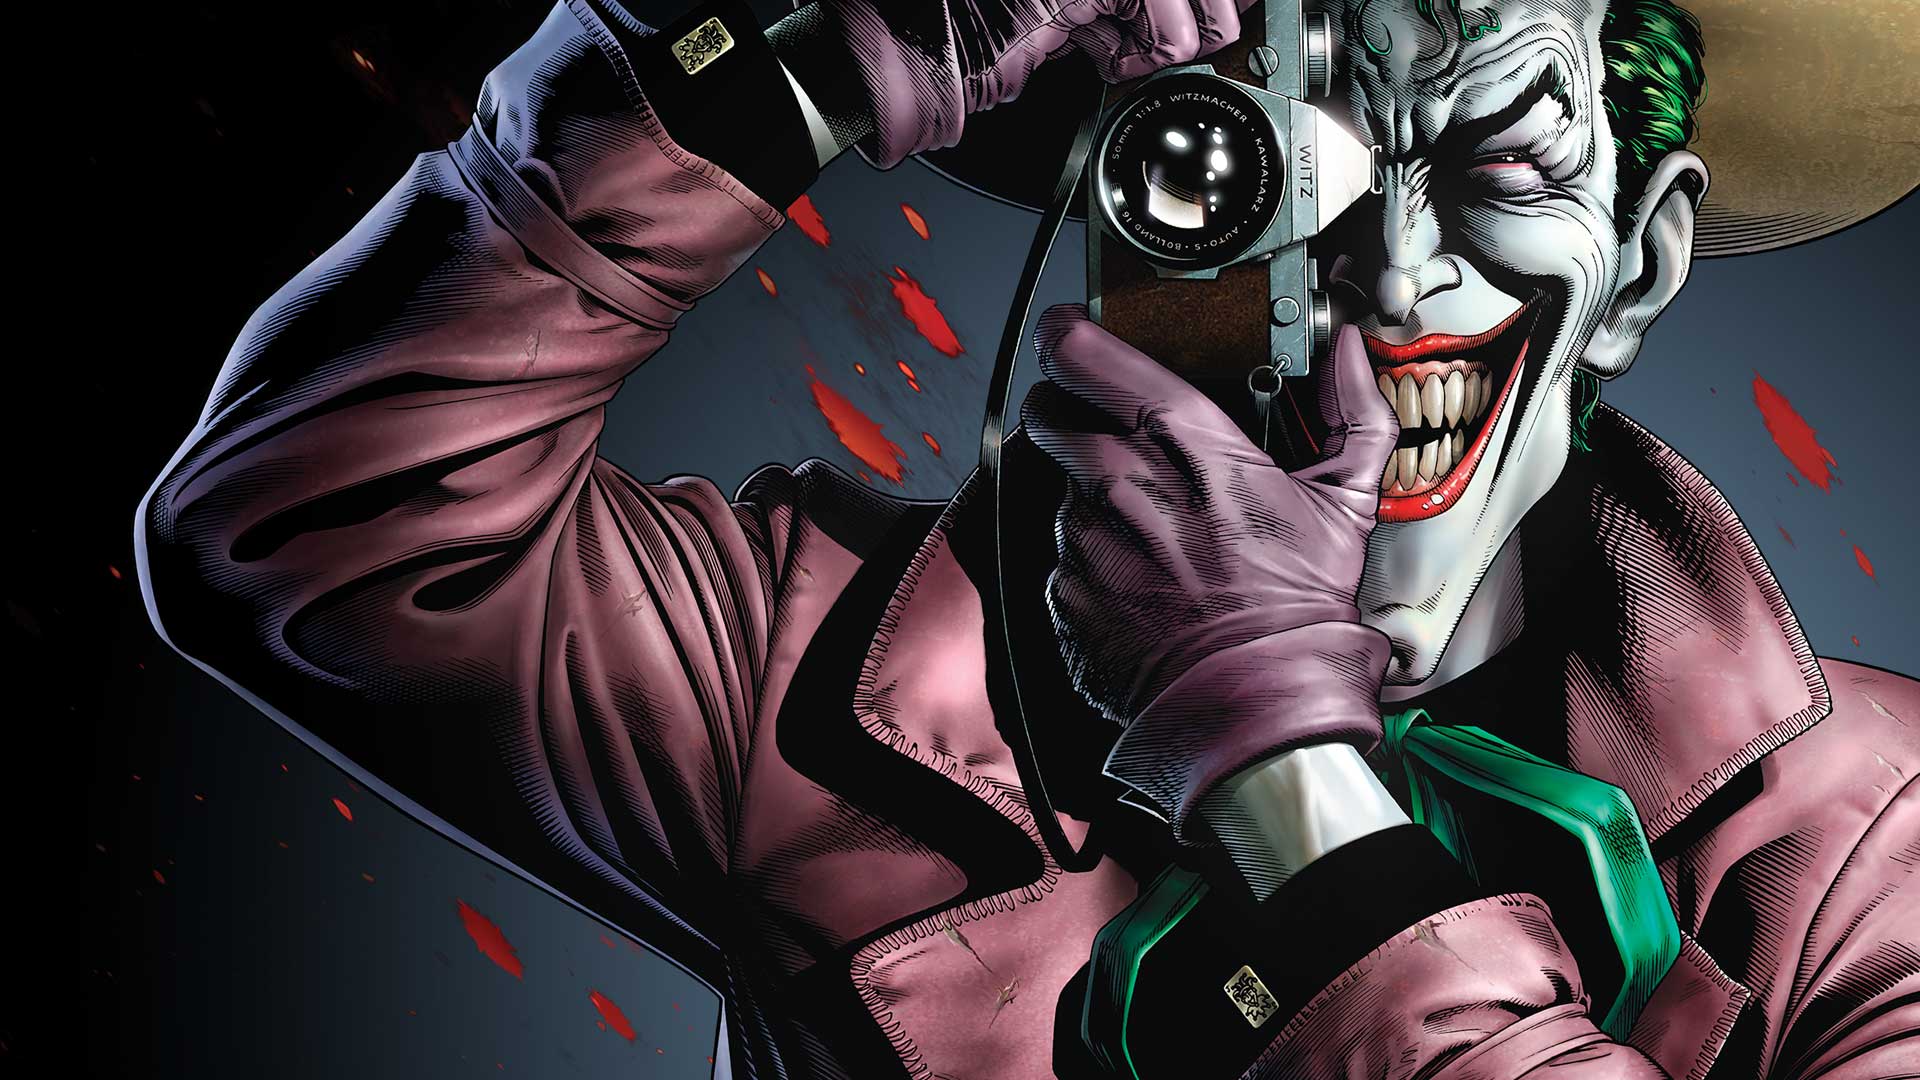 Joker Killing Joke 4K Ultra HD Wallpapers